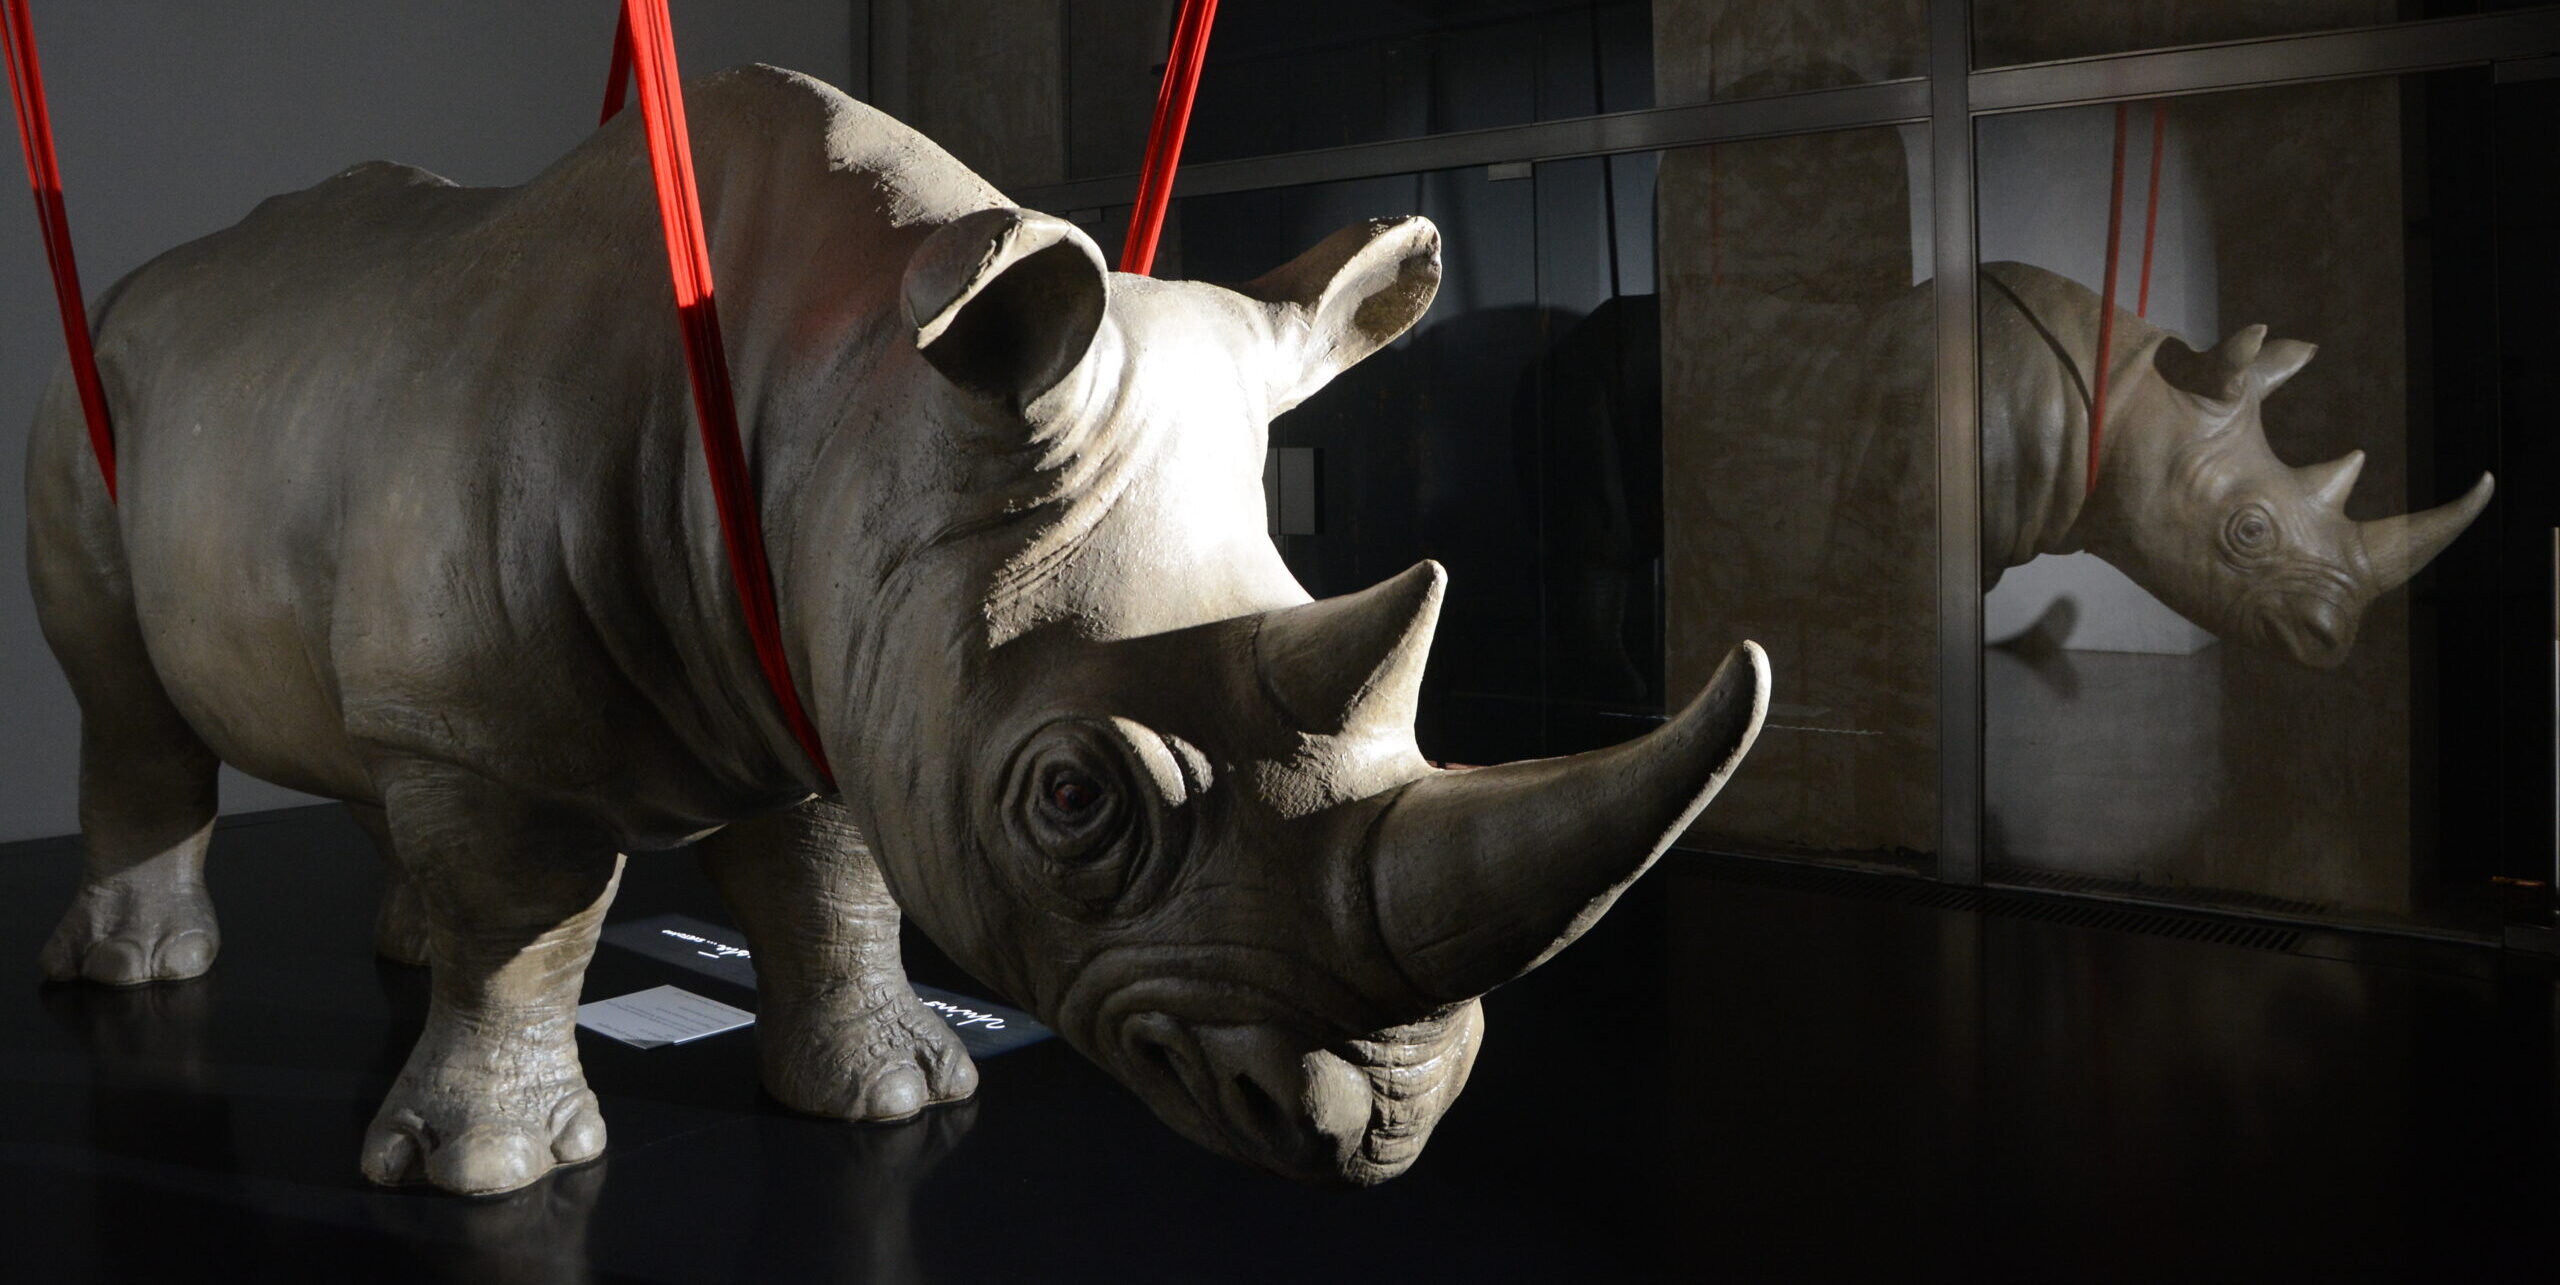 CURI, IL RINOCERONTE E RAFFAELE. “rhinoceros apud saepta” e “Istantanee dell’Assurdo” di Raffaele Curi alla Fondazione Alda Fendi-Esperimenti